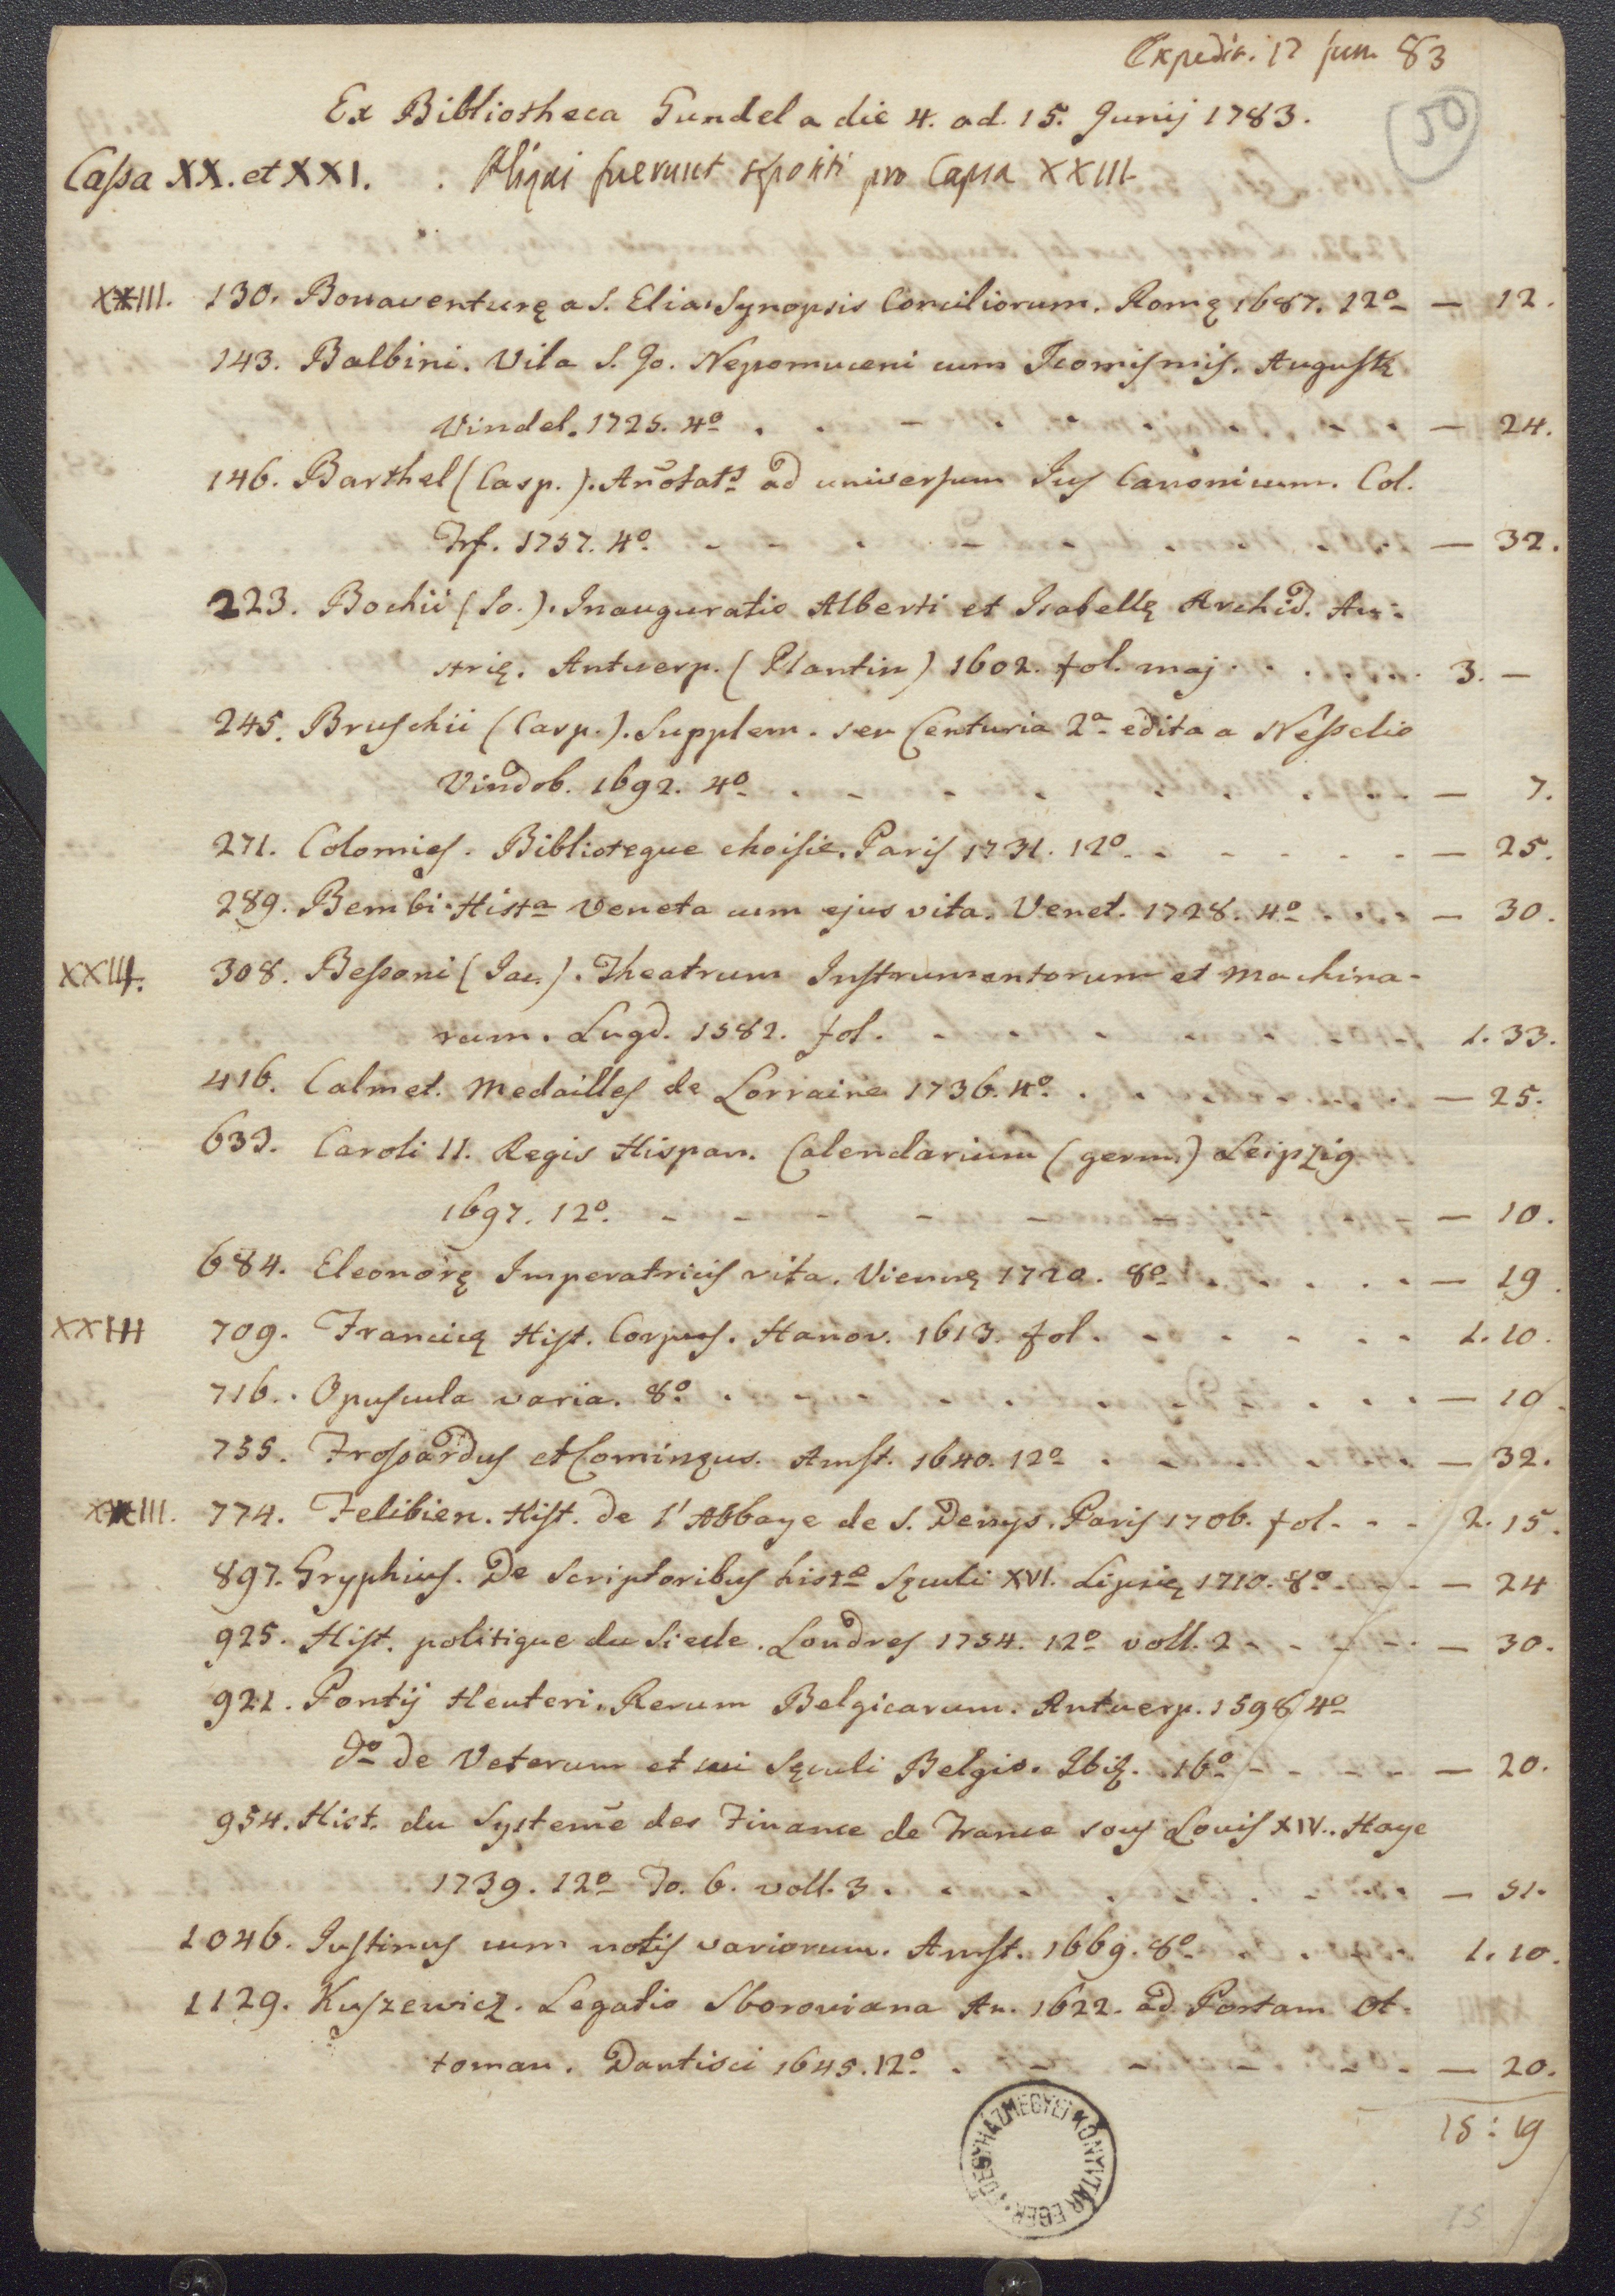 Paul Anton von Gundel könyvtárának 1783. június 4. és 15. között Lipcsében tartott aukcióján vett könyvek katalógusa